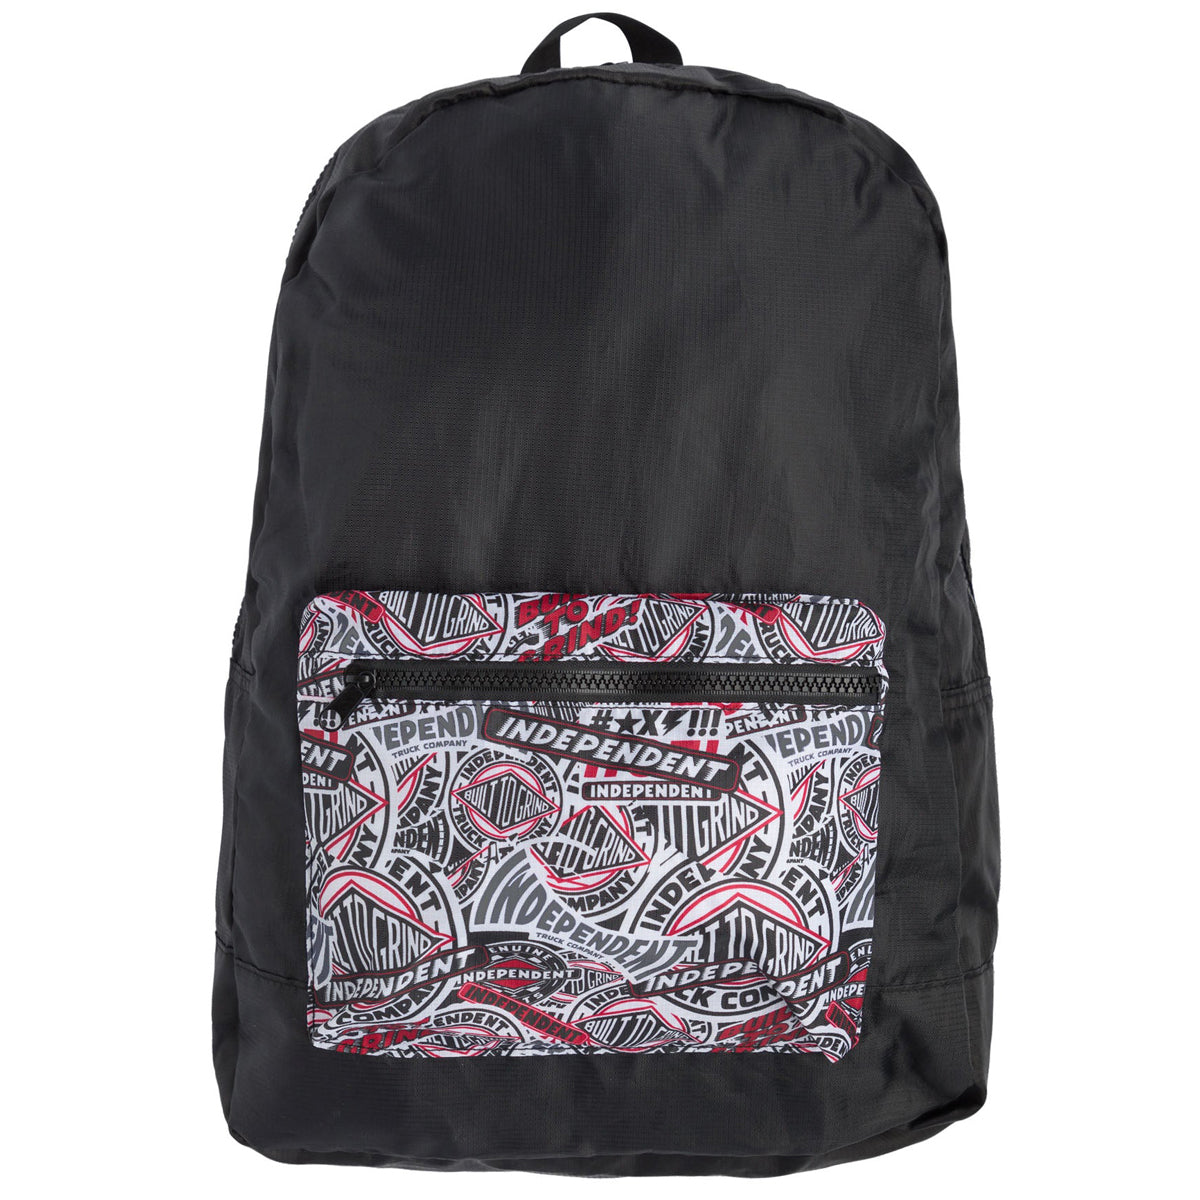 Independent BTG Pattern Backpack - Black image 1